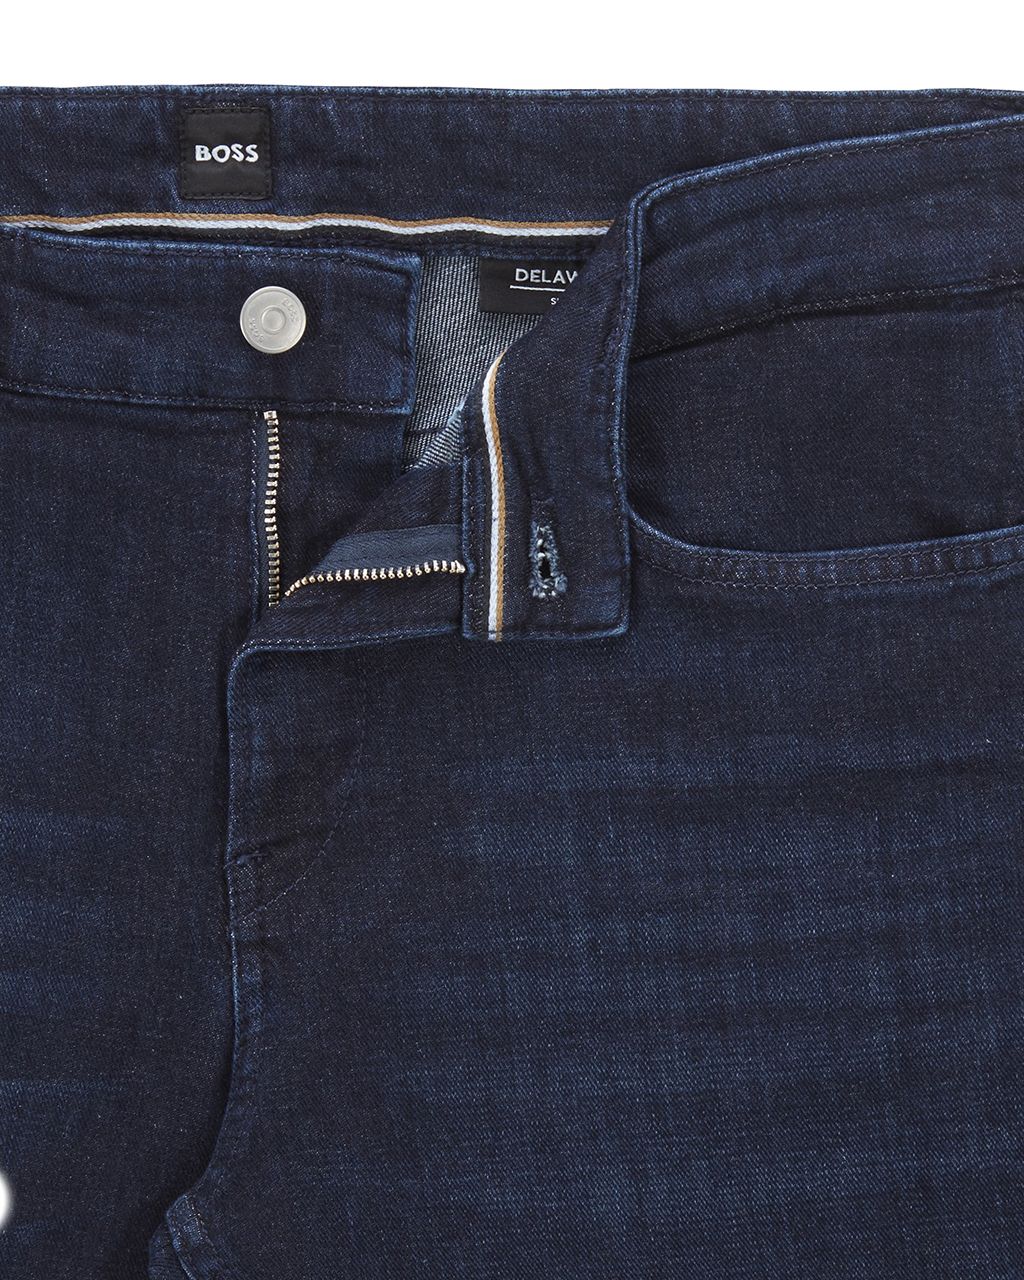 Wieg Desillusie vitamine Hugo Boss BOSS Black Jeans 'Delaware' donkerblauw 50470488 - Vergelijk  prijzen